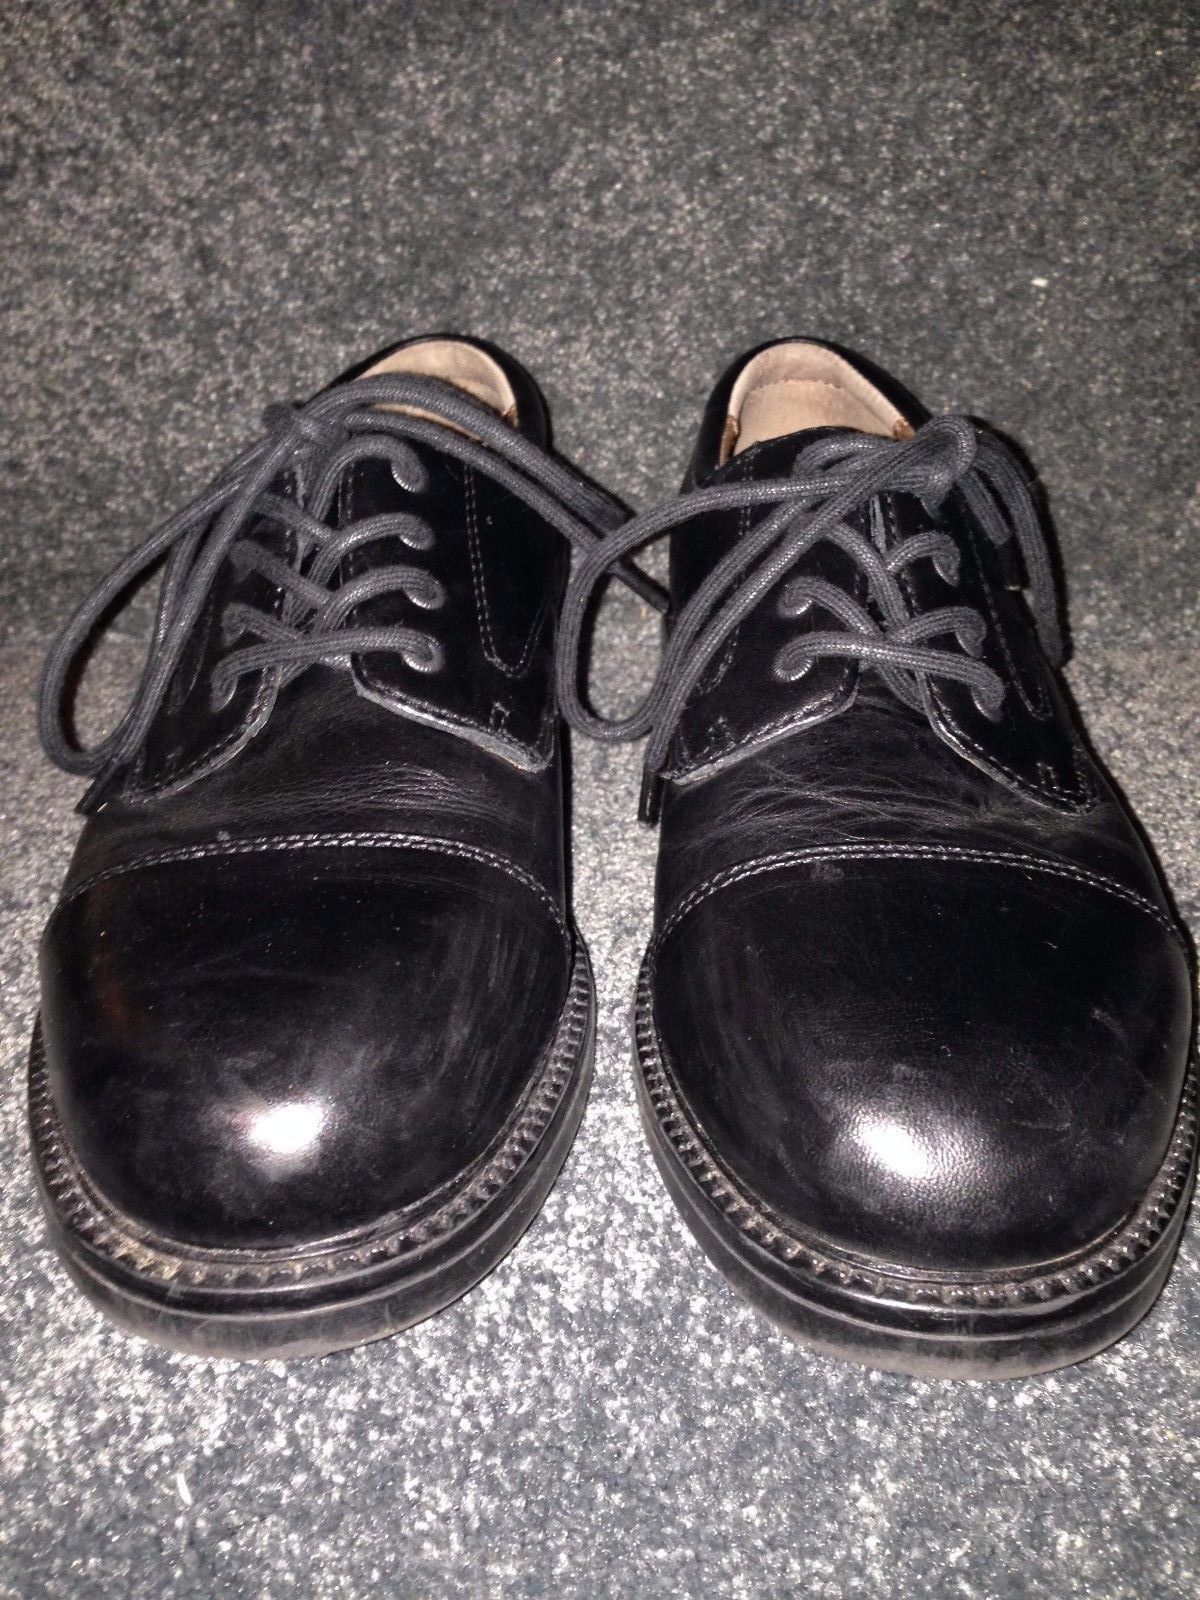 black dress shoes size 8